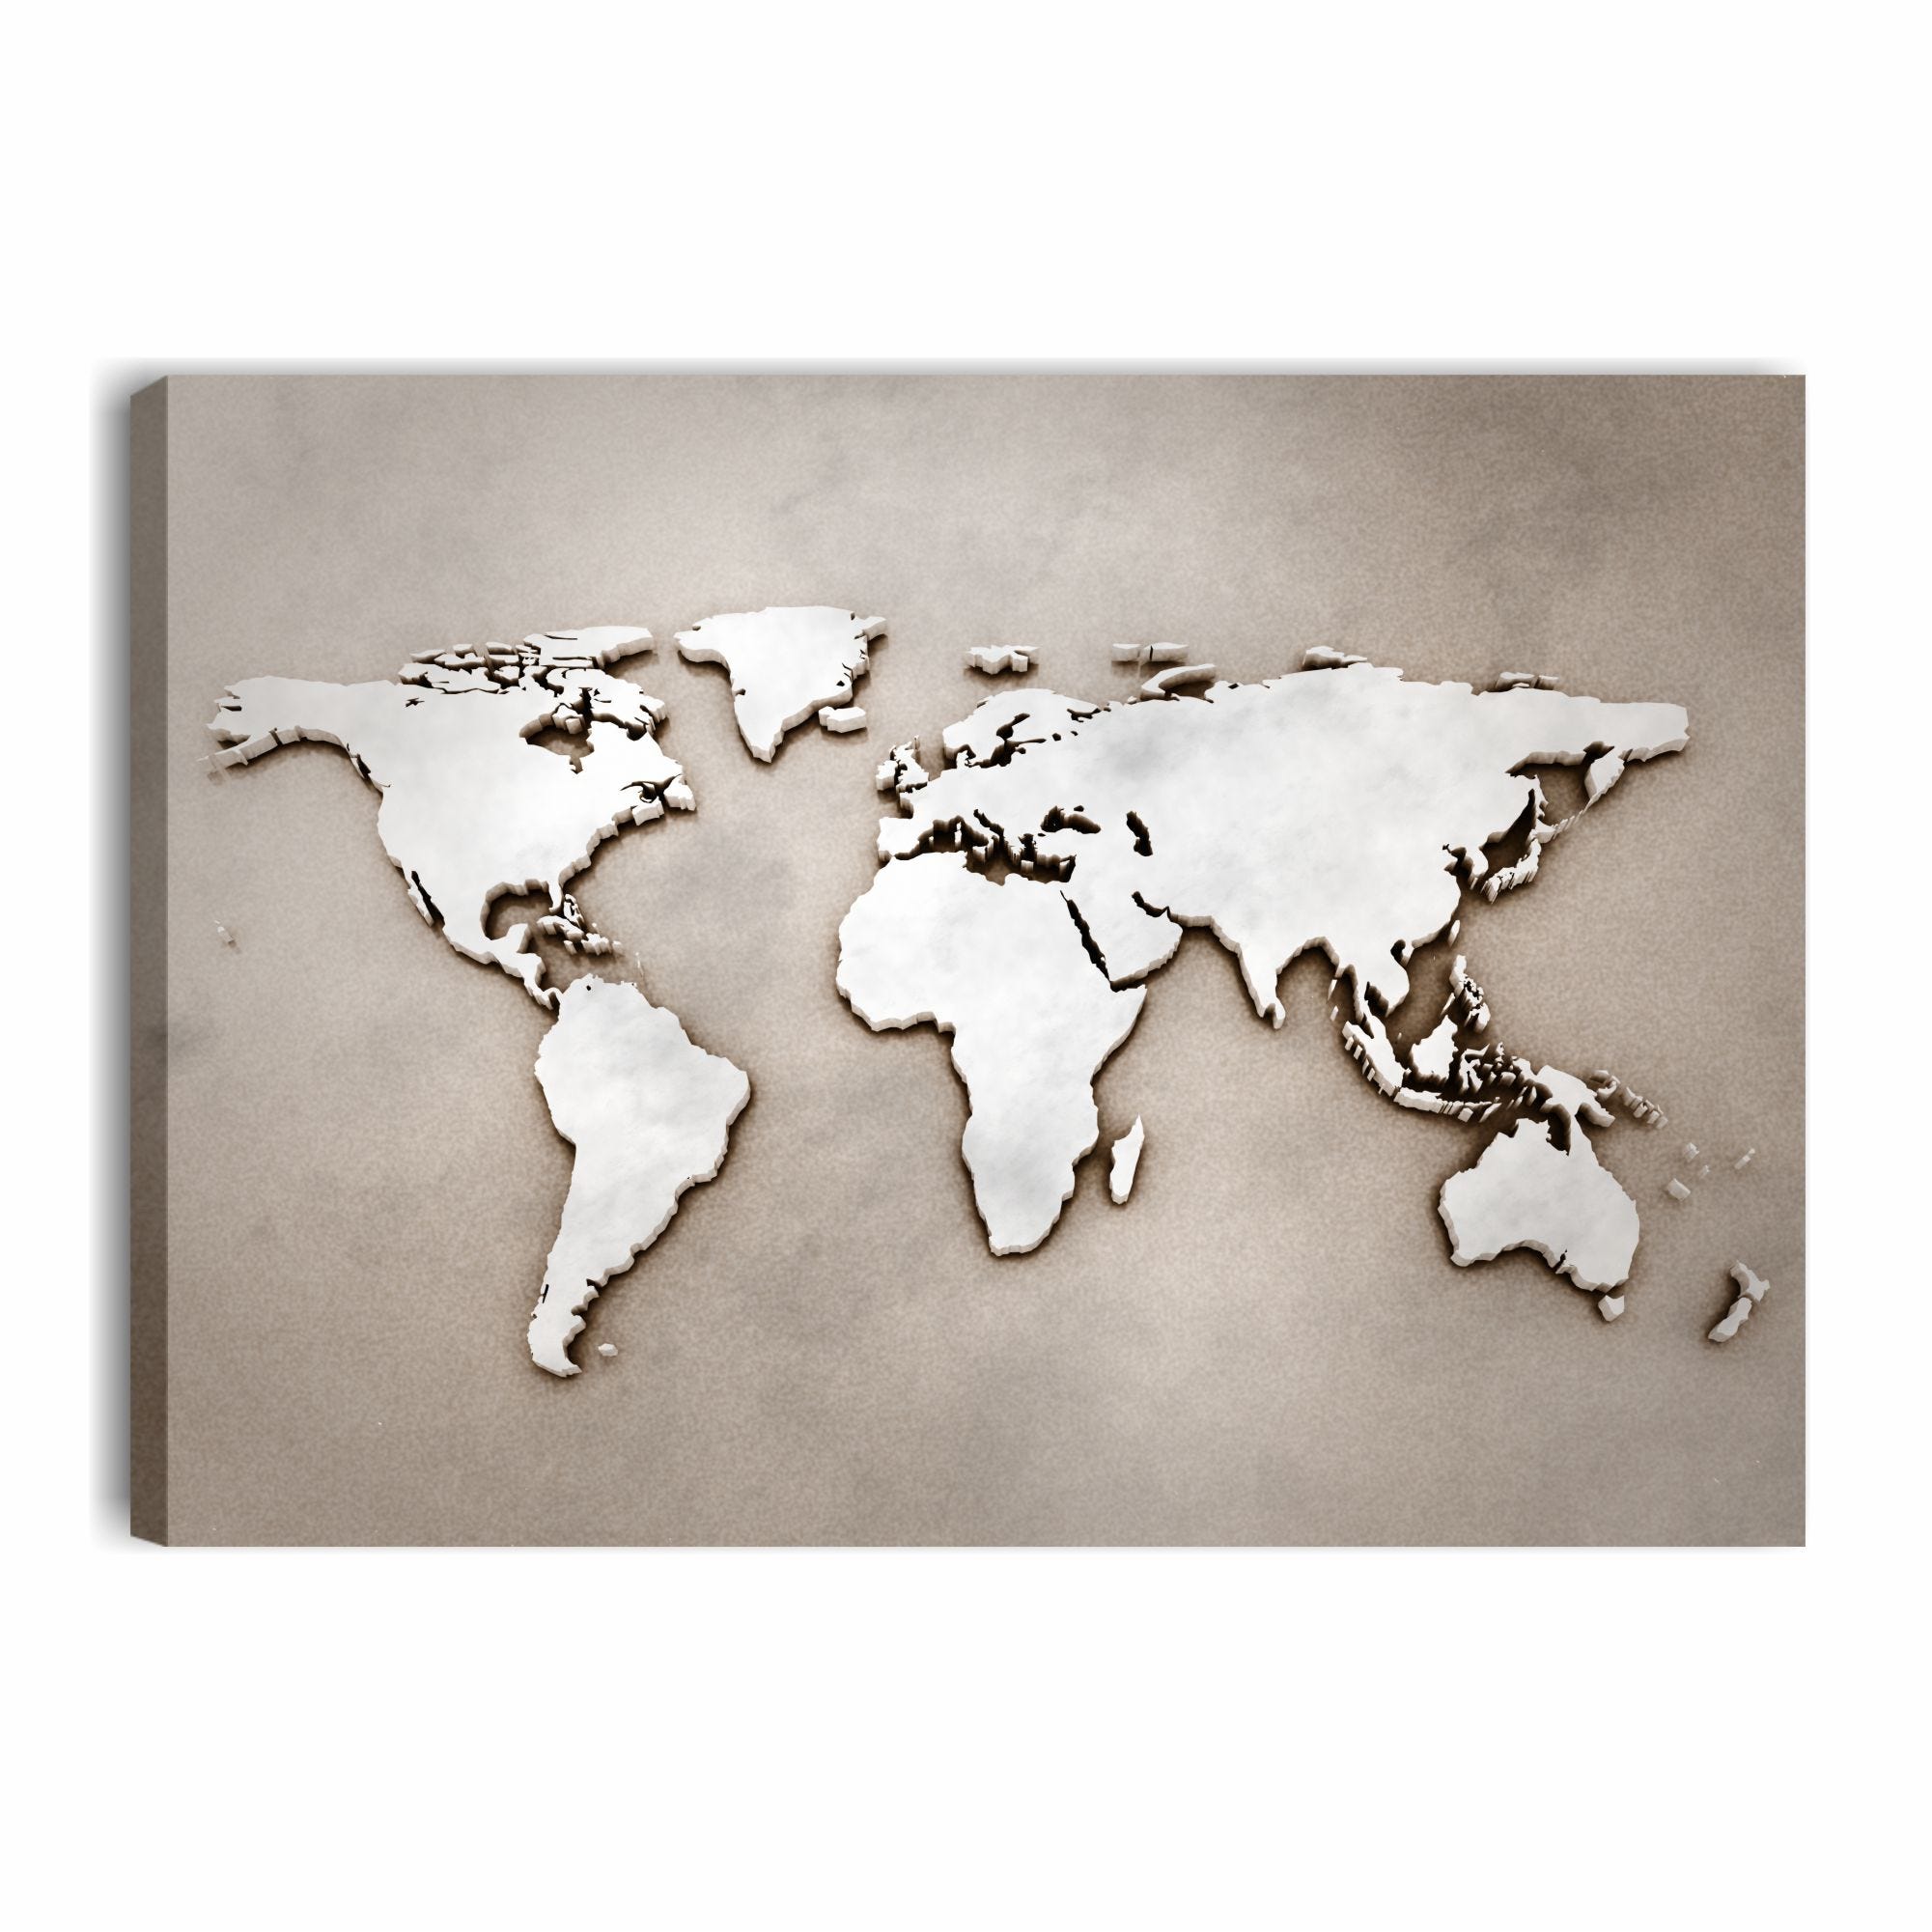 Mappamondo vintage bianco 2 - Quadro moderno con mappa del mondo